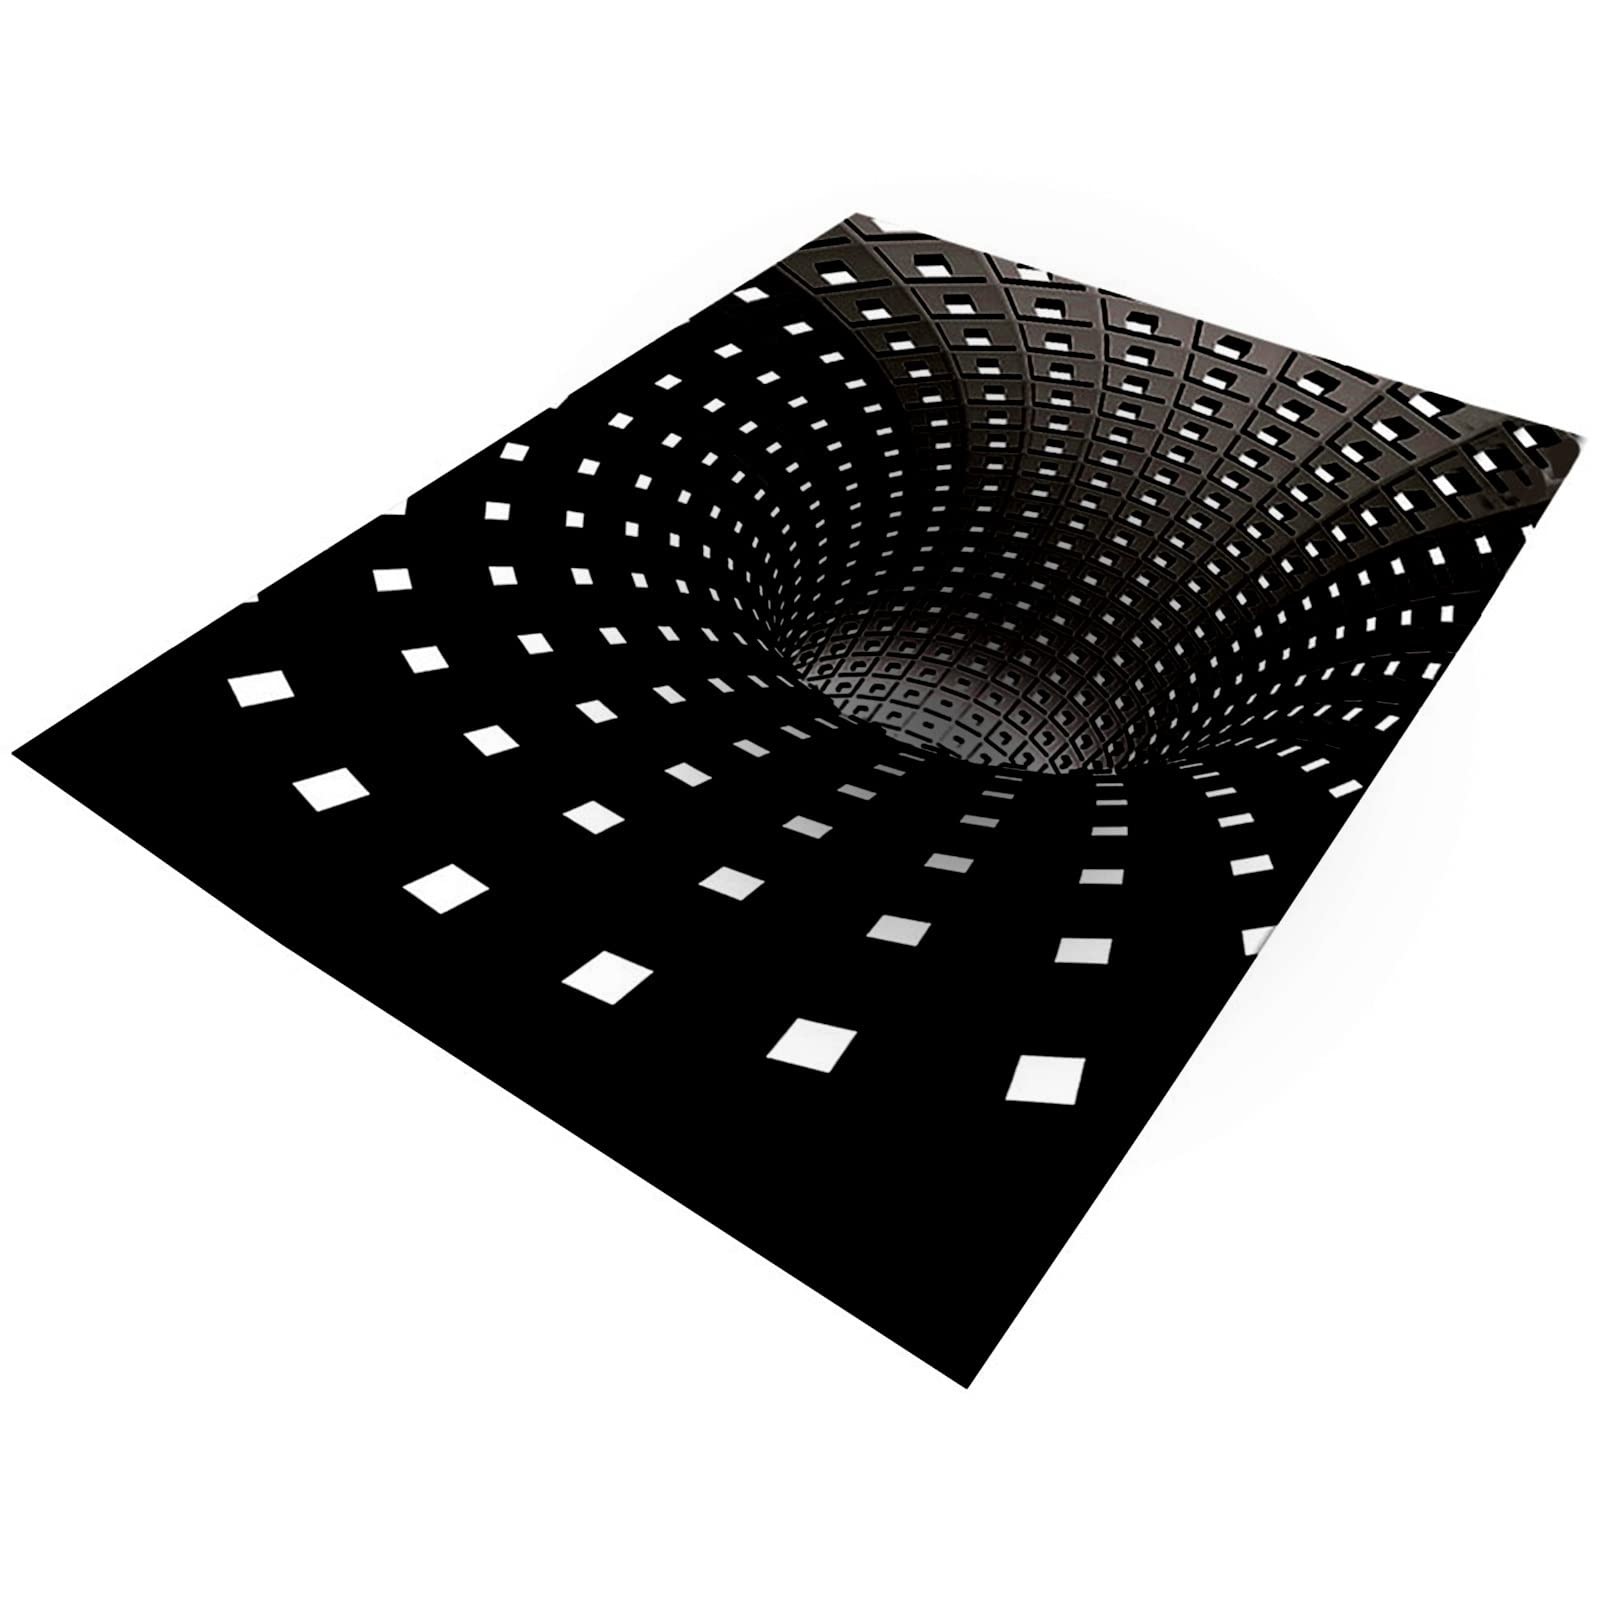 Illusion Area Rug 3D Schwarz Weiß Stereo Vision Teppich Wave Point Rechteckige quadratische Teppiche Matte Anti-Rutsch-Vliesstoff Dauerhafte Fußmatte Bodenteppich Teppich für Wohnzimmer von Sloane